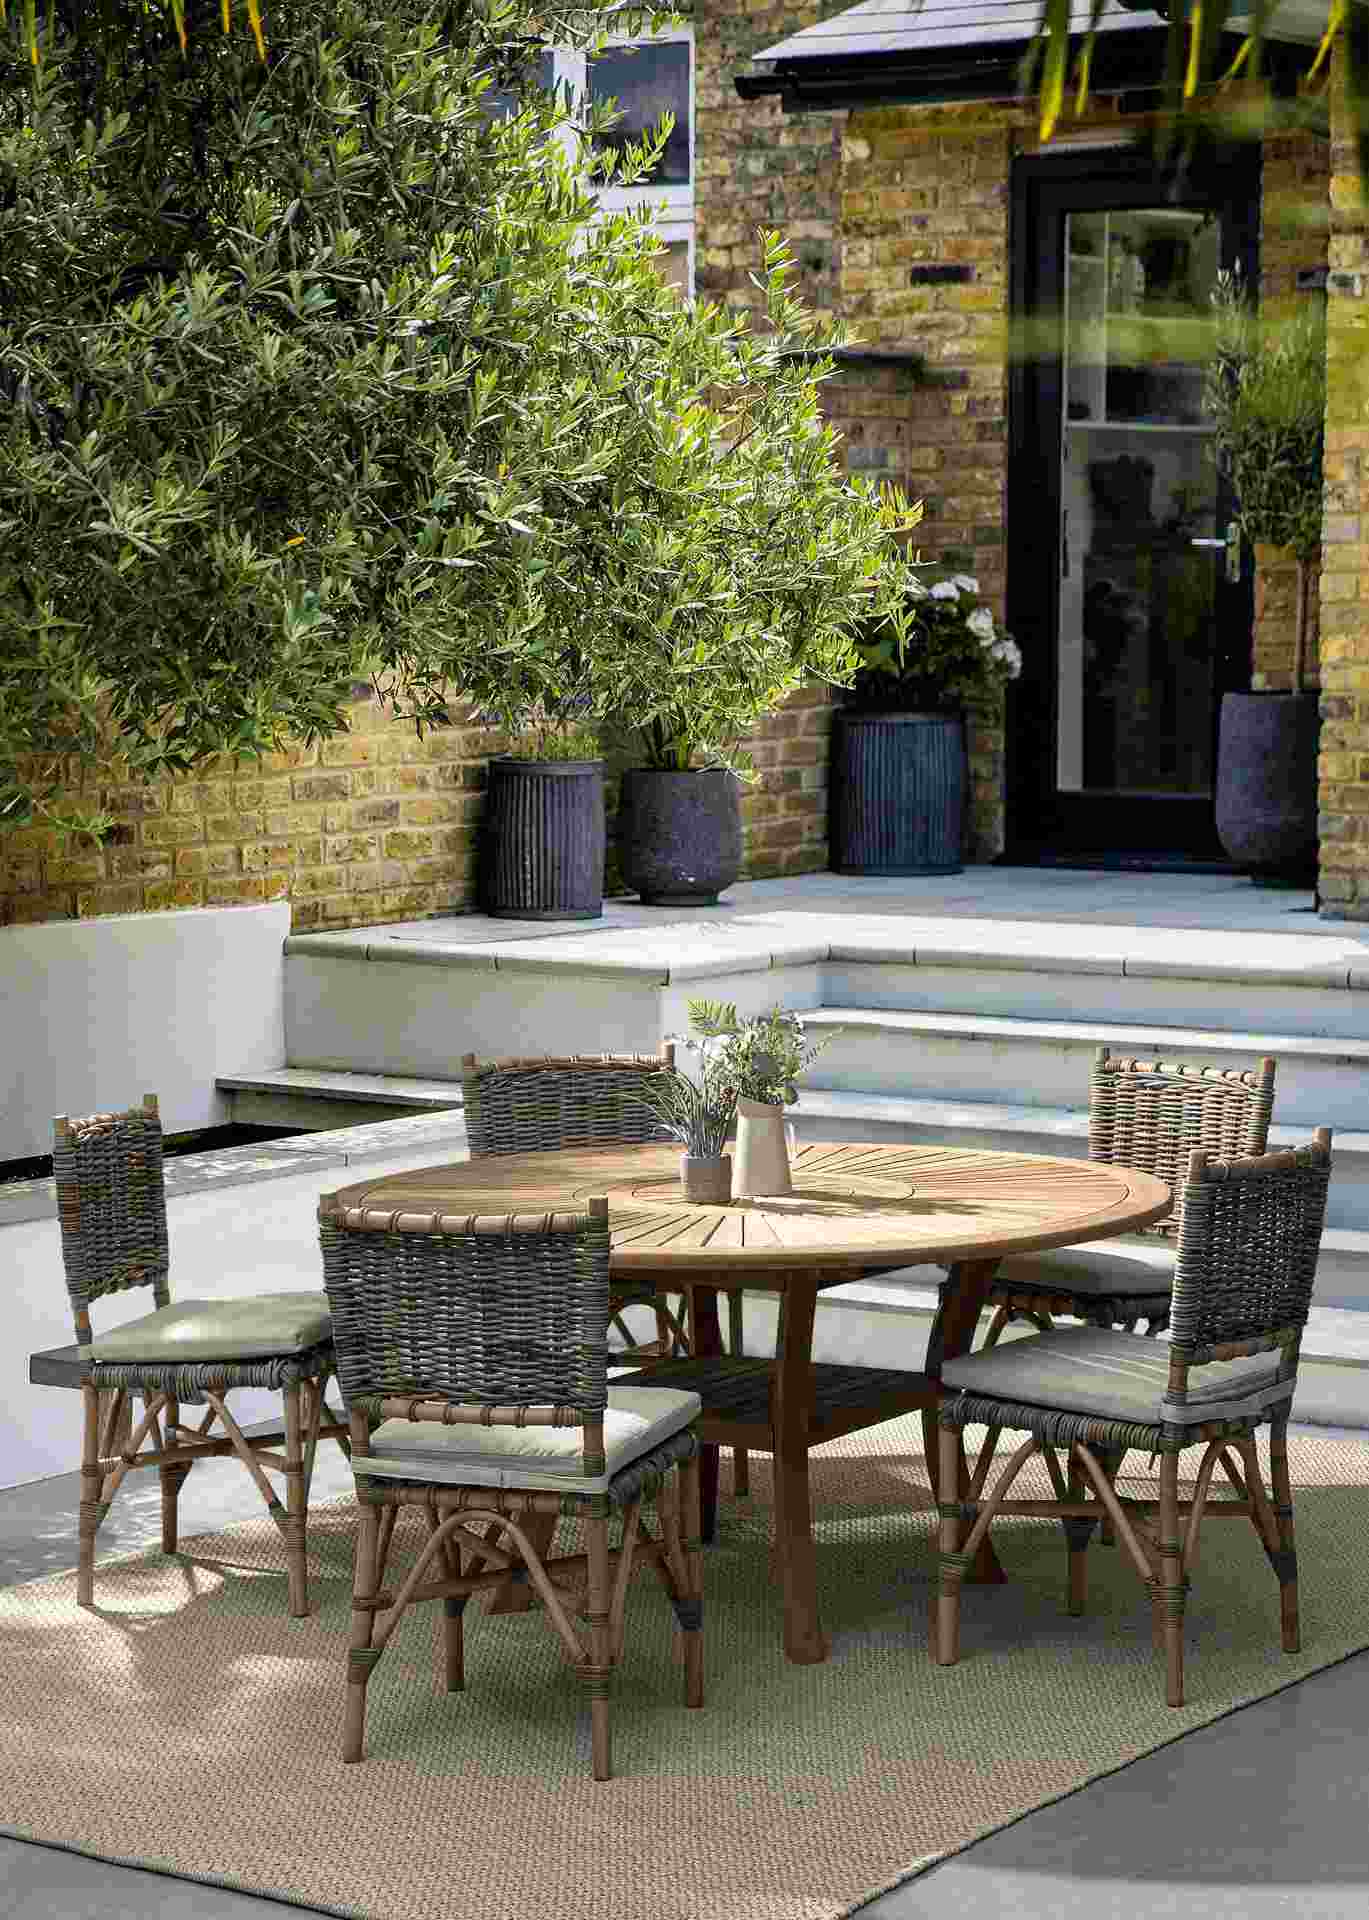 Der Gartenstuhl Tarifa überzeugt mit seinem klassischen Design. Gefertigt wurde er aus Kubu, welches einen braunen Farbton besitzt. Das Gestell ist aus Rattan und hat eine natürliche Farbe. Der Stuhl verfügt über eine Sitzhöhe von 52 cm und ist für den Ou